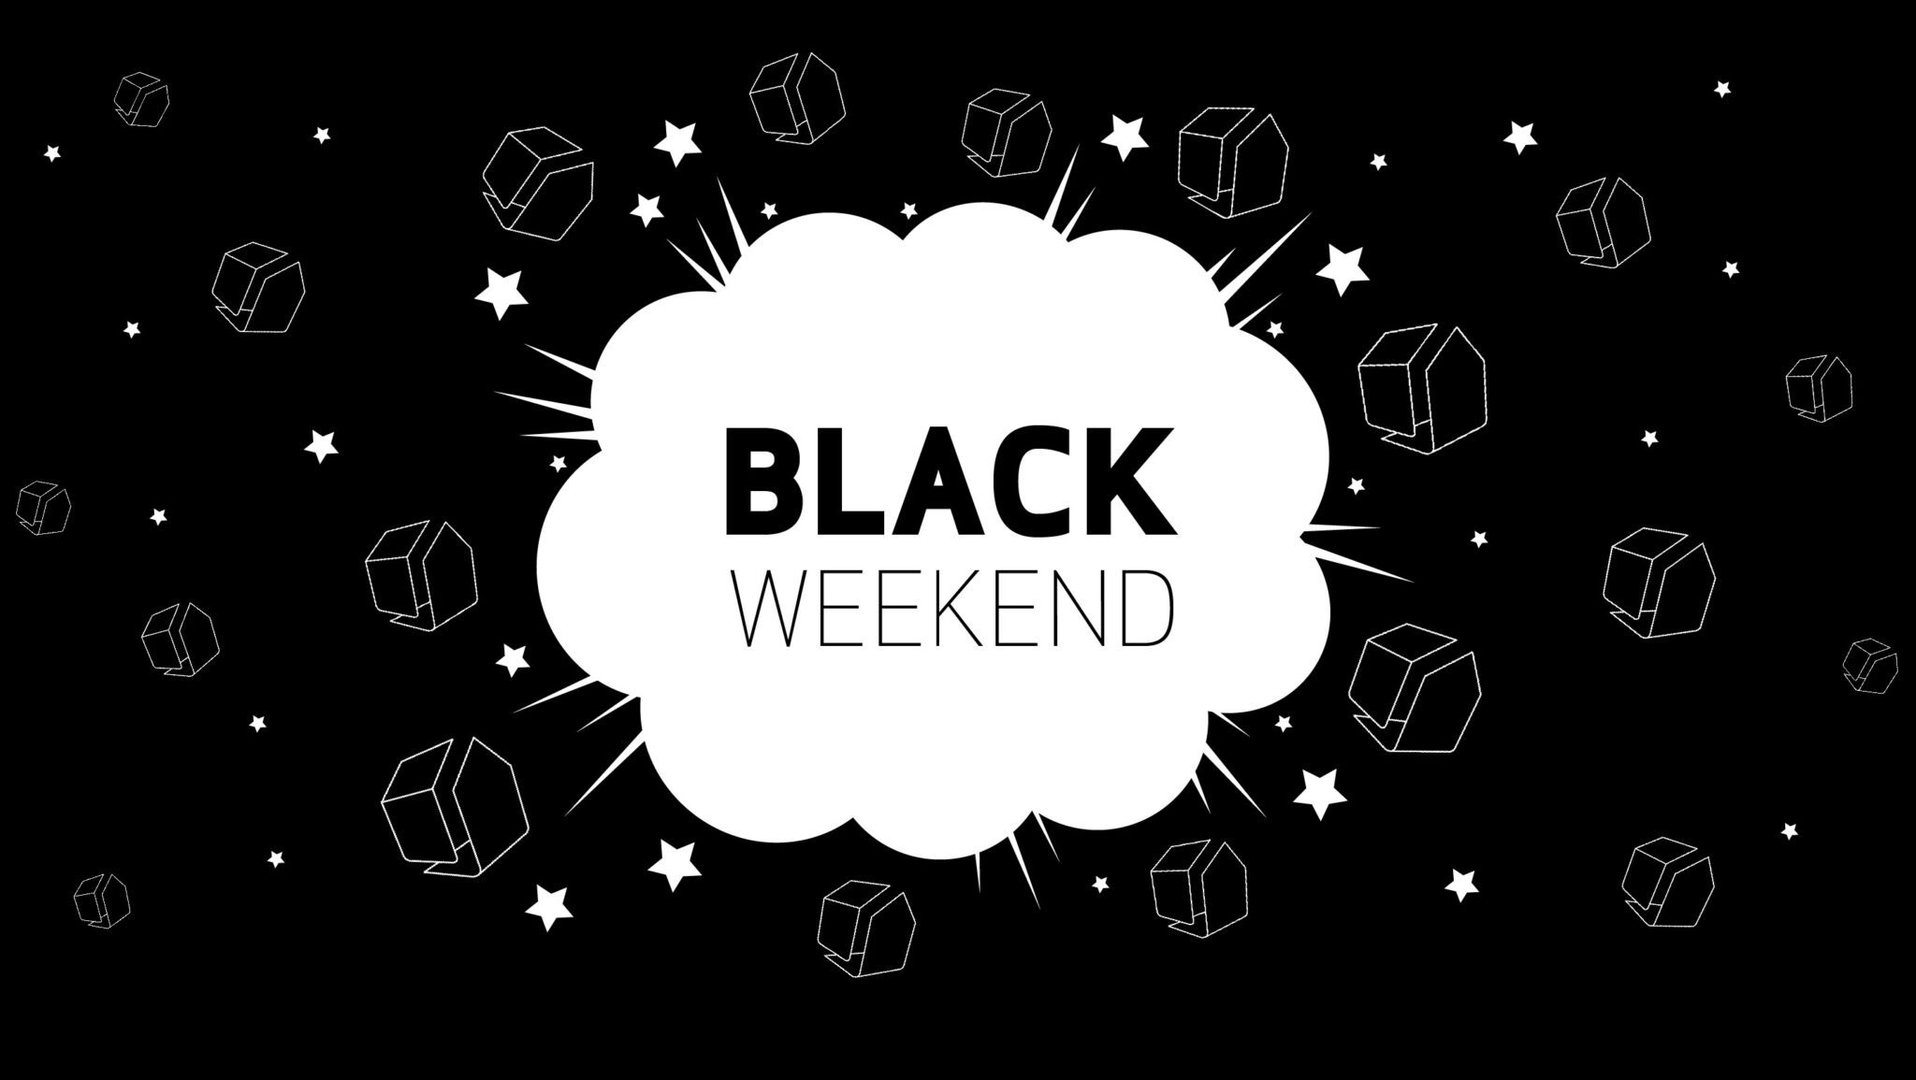 abchus-black-weekend-banner-2048x1155.jpg